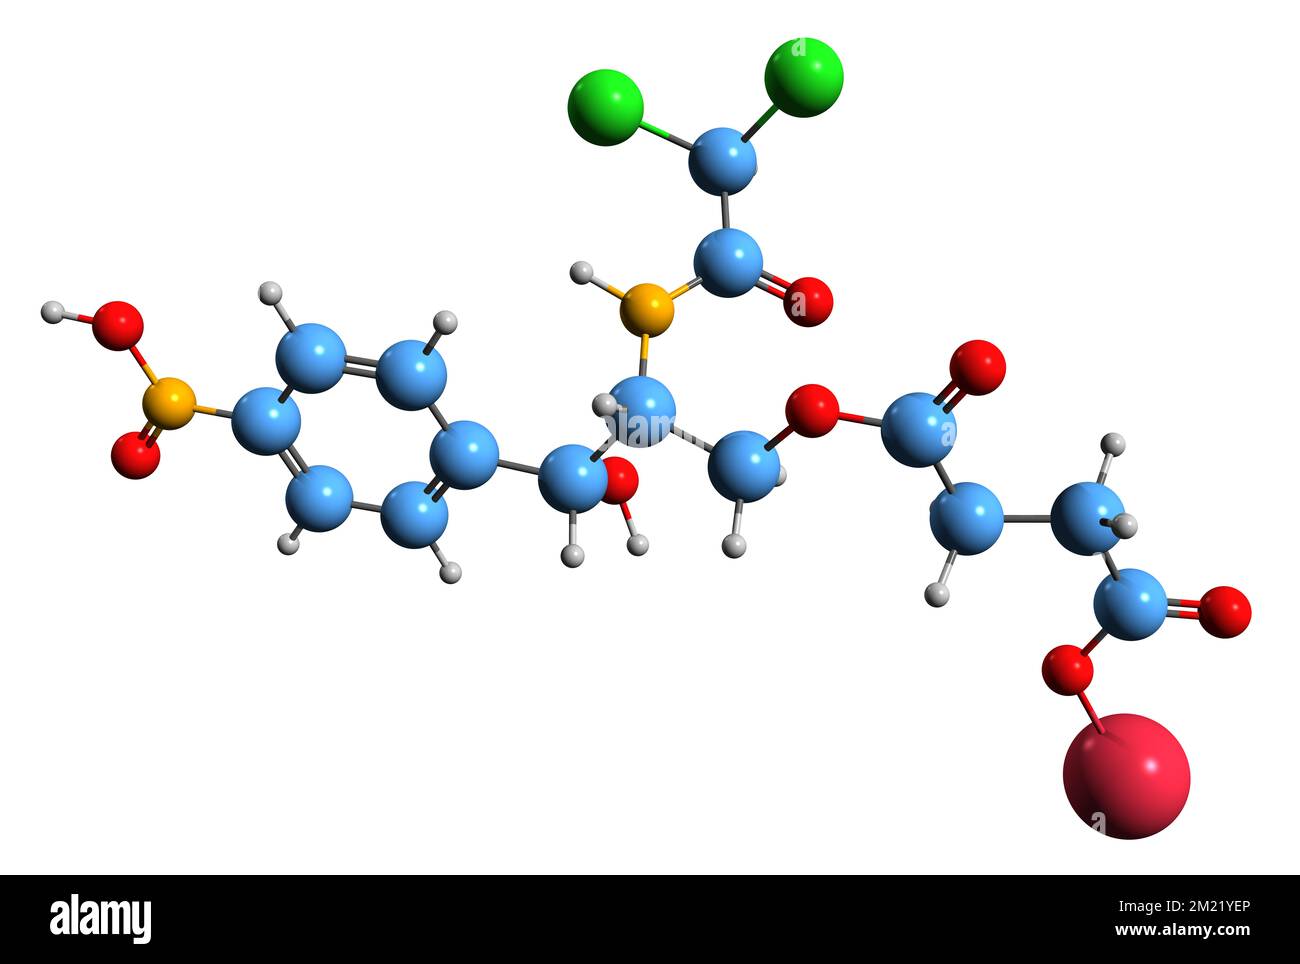 3D-Bild einer Chloramphenicol-Natrium-Succinat-Skelettformel - molekularchemische Struktur eines auf weißem Hintergrund isolierten Breitbandantibiotikums Stockfoto